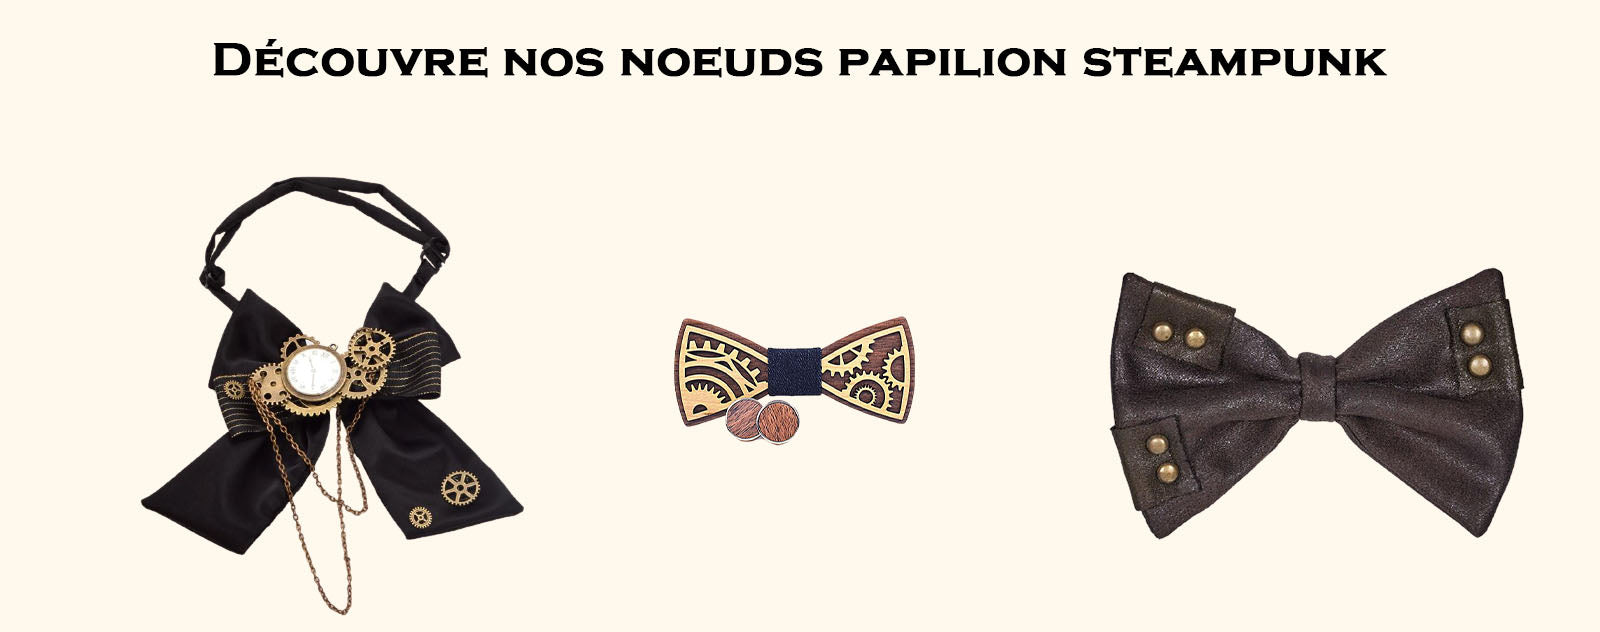 Nœuds Papillon